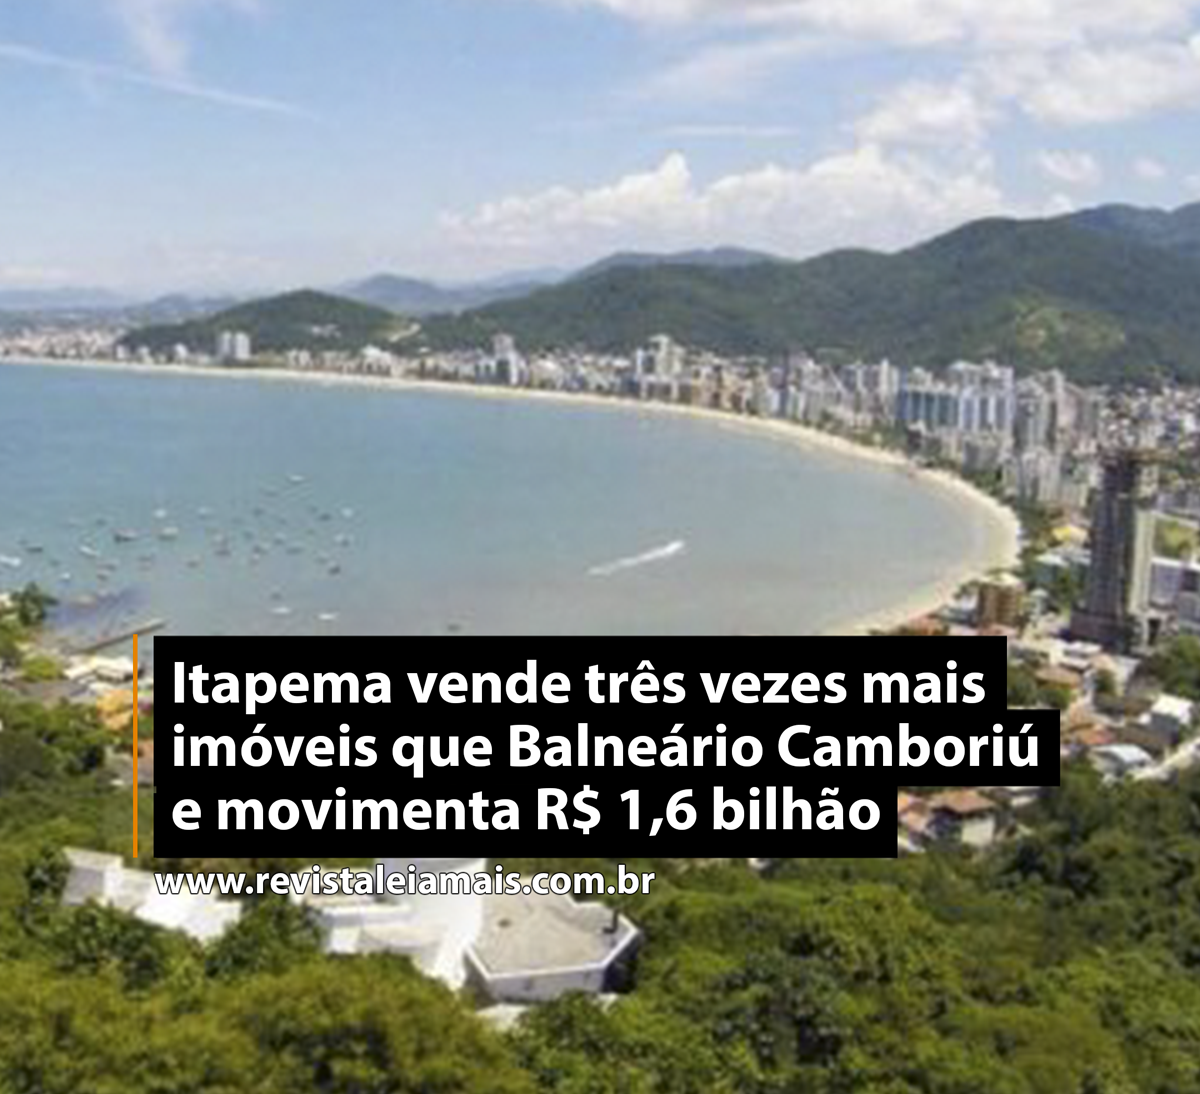 Itapema vende três vezes mais imóveis que Balneário Camboriú e movimenta R$ 1,6 bilhão